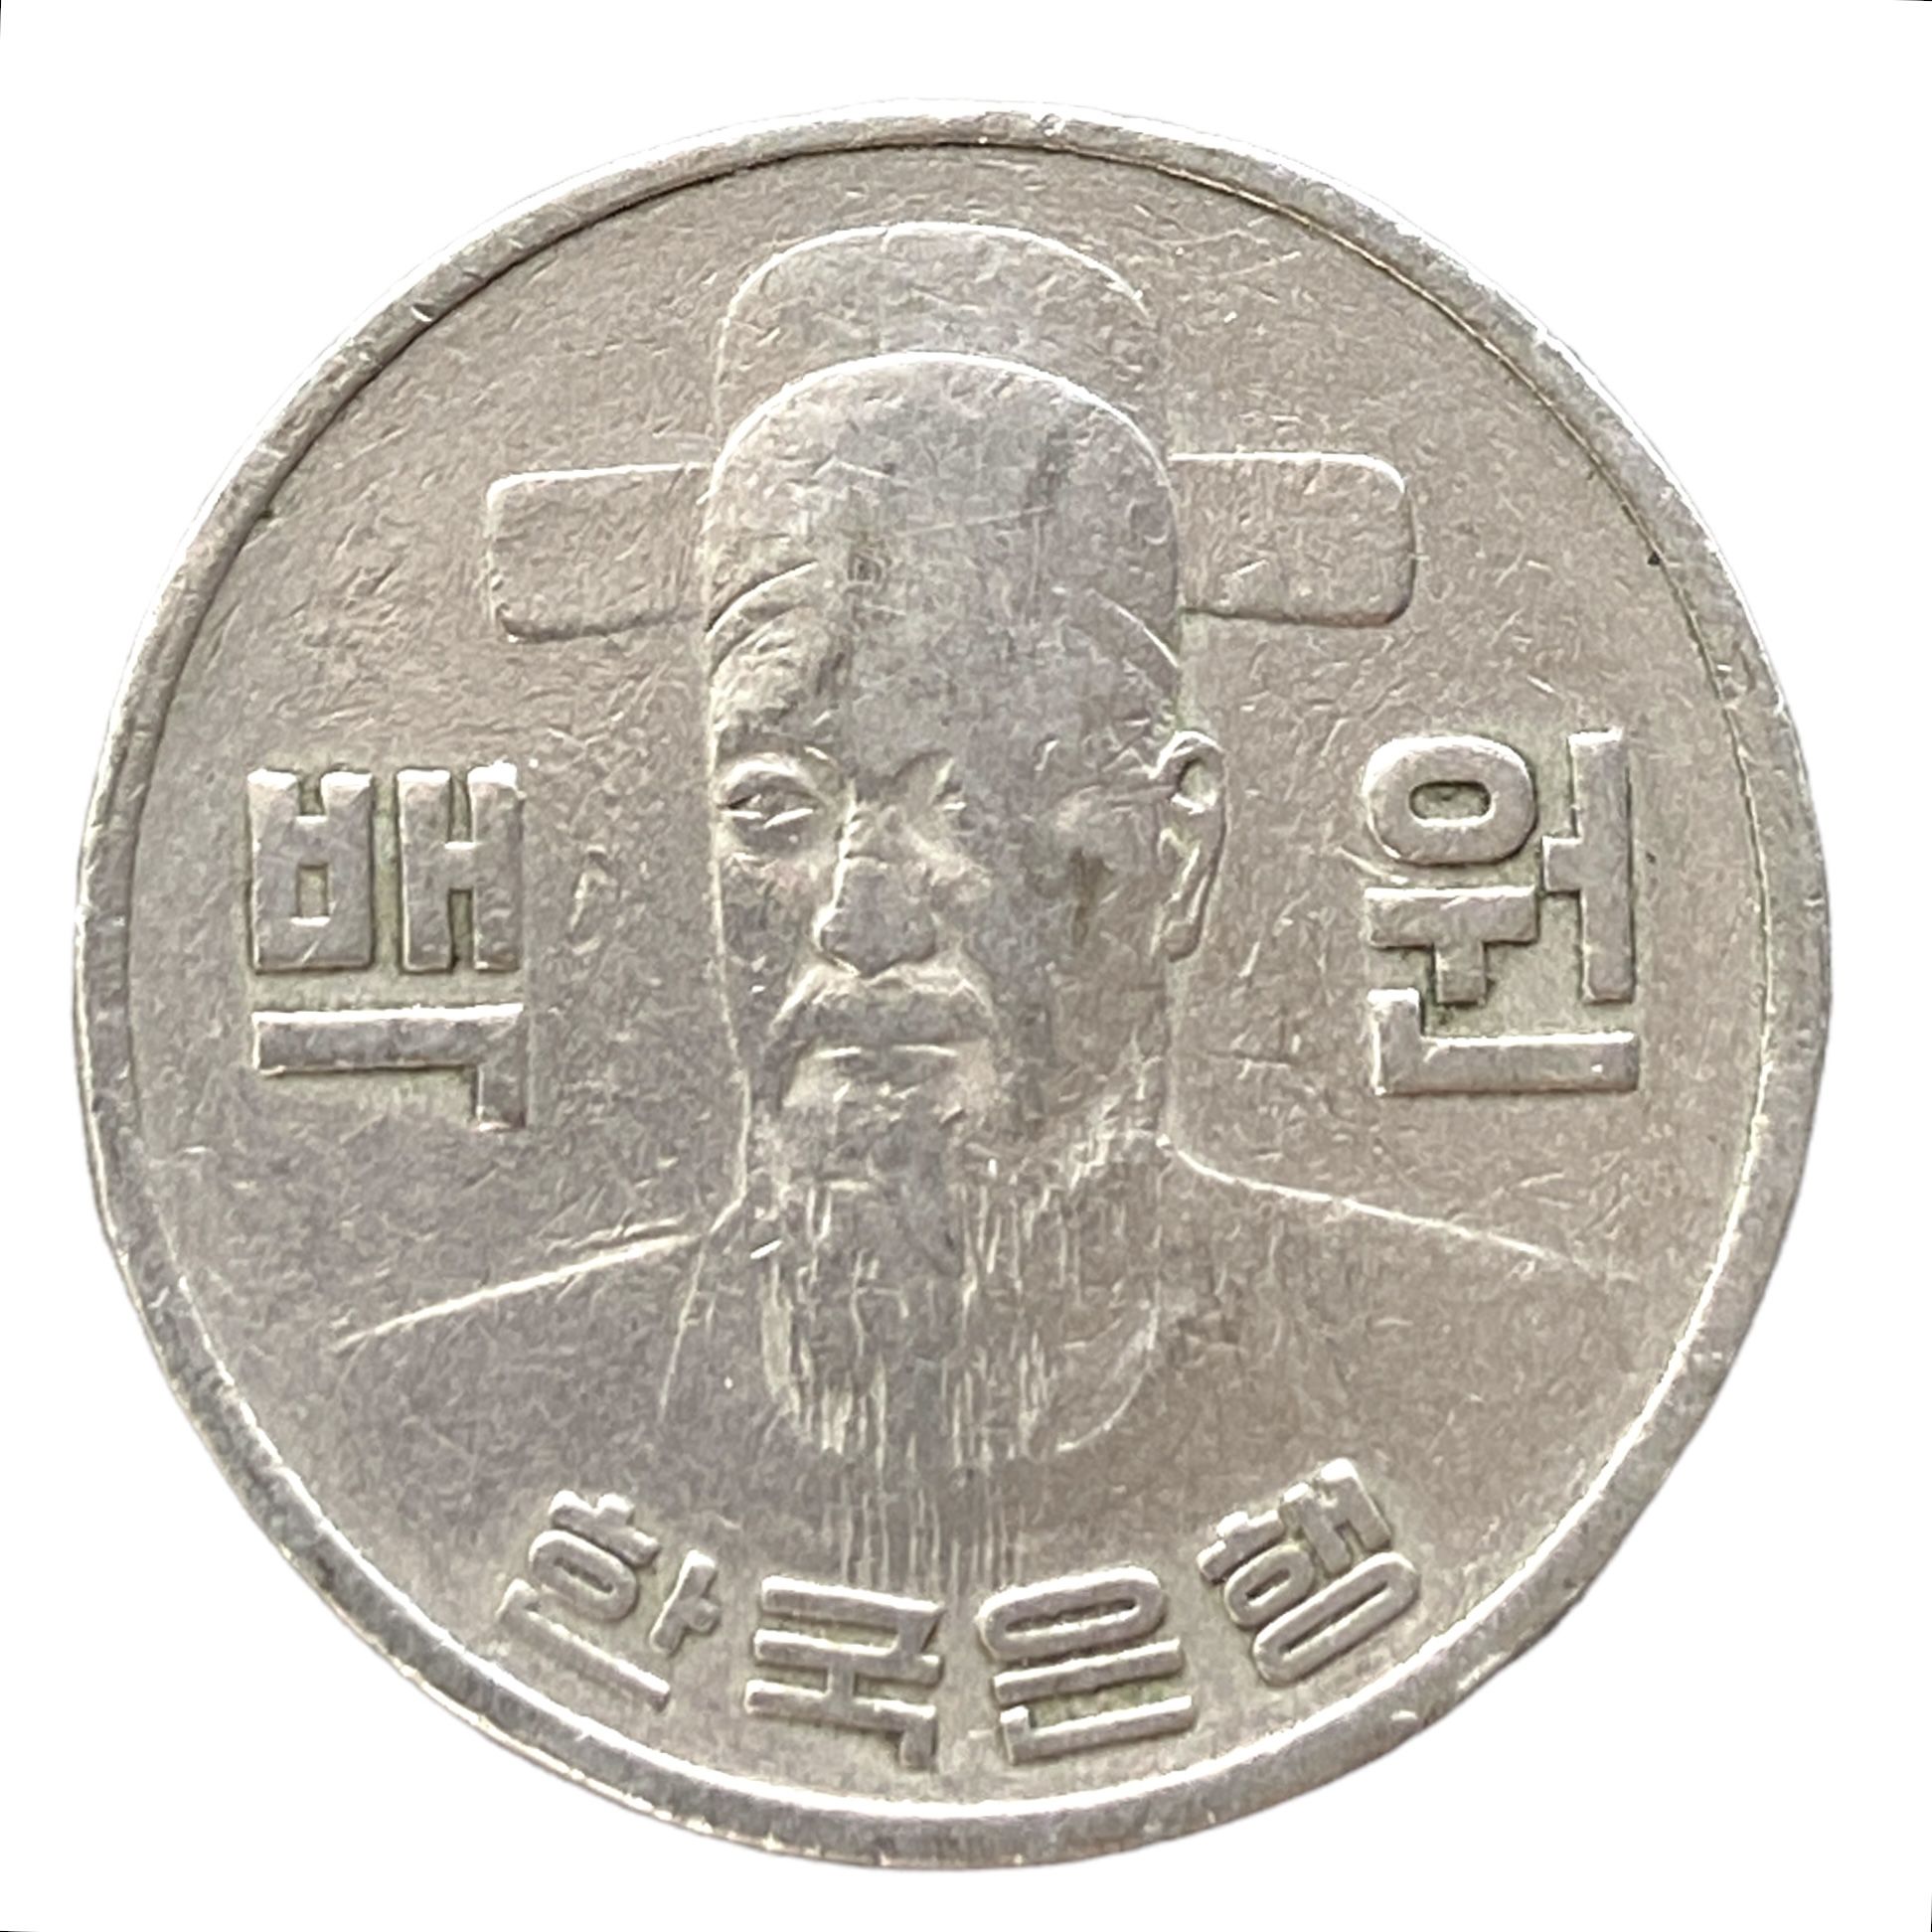 100 вон это сколько. Монета Южной Кореи 100 вон. Монета Южной Кореи 100 вон ценность. Корейские монеты 100 вон. 100 Вон в рублях.